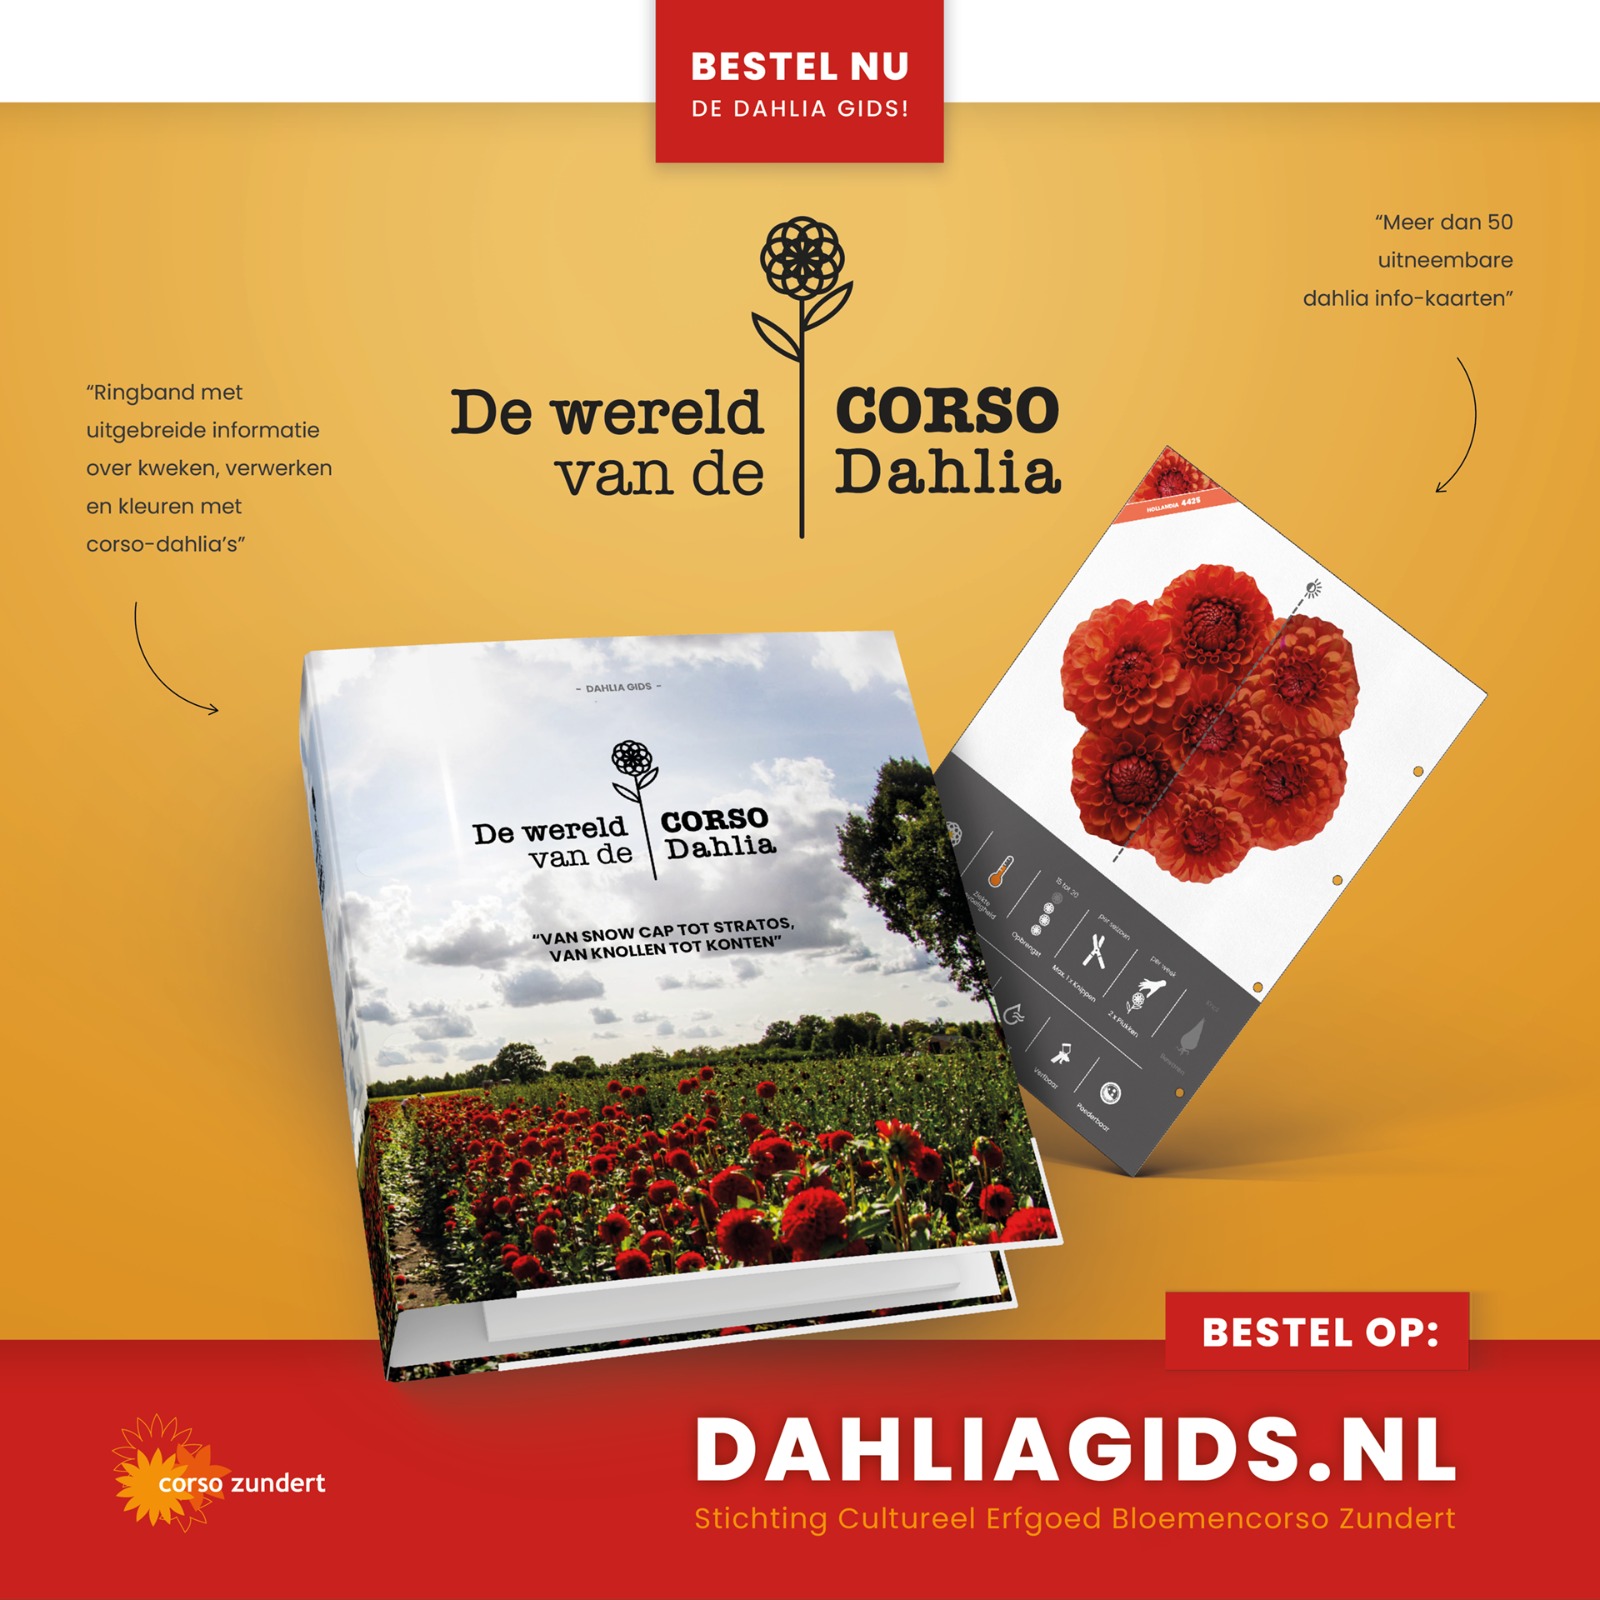 Dahliagids.nl